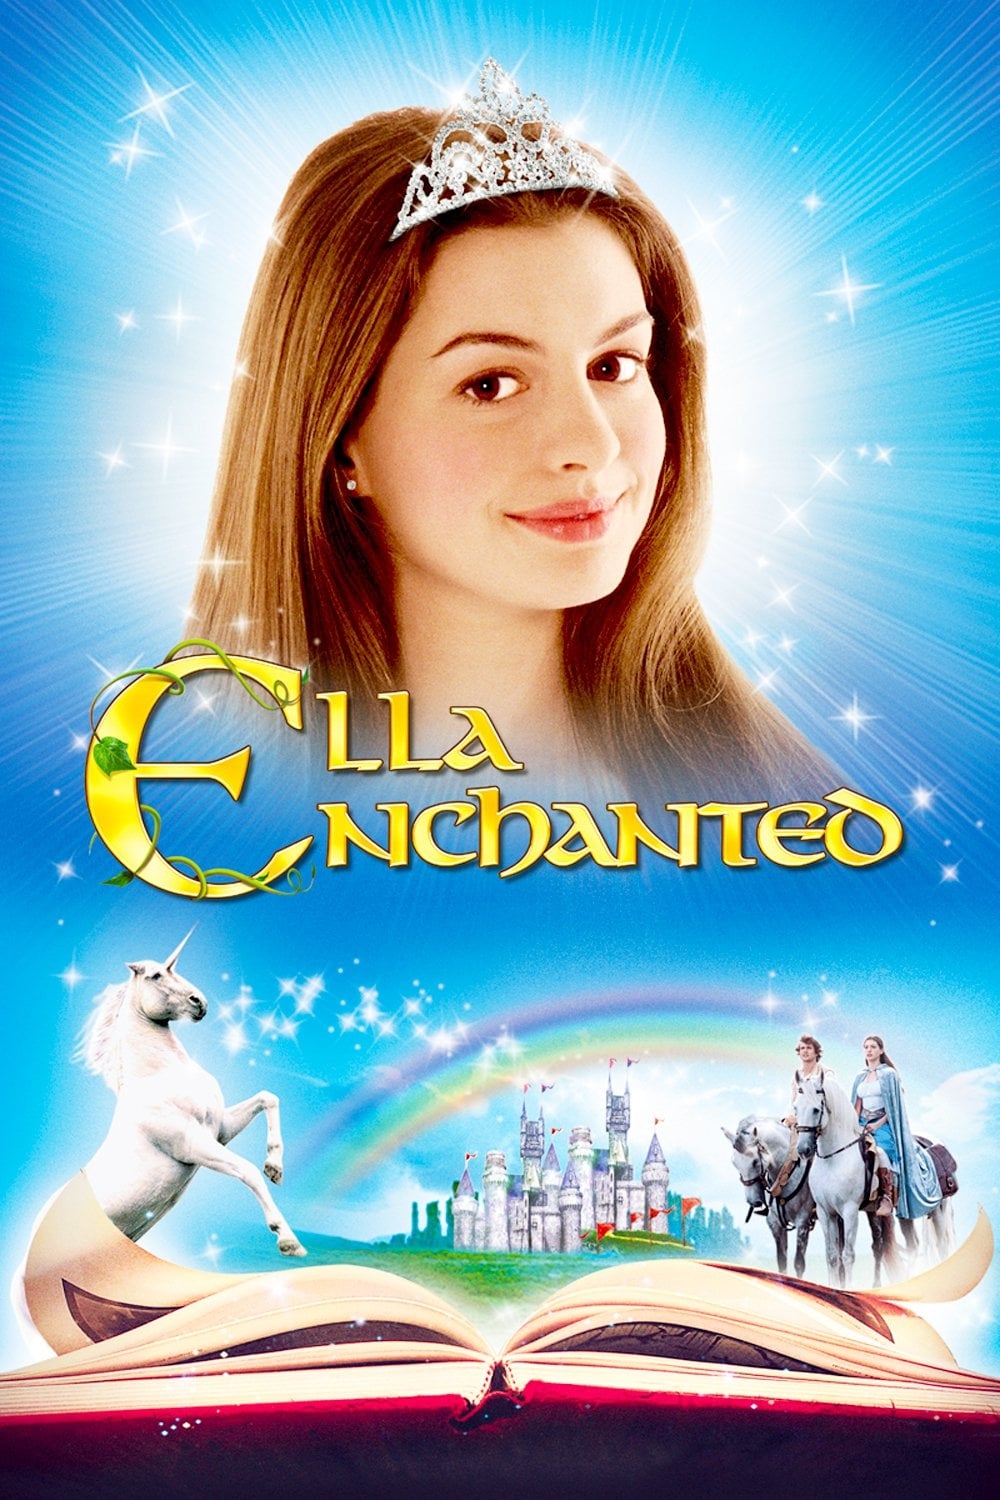 Ella au pays enchanté (2004)